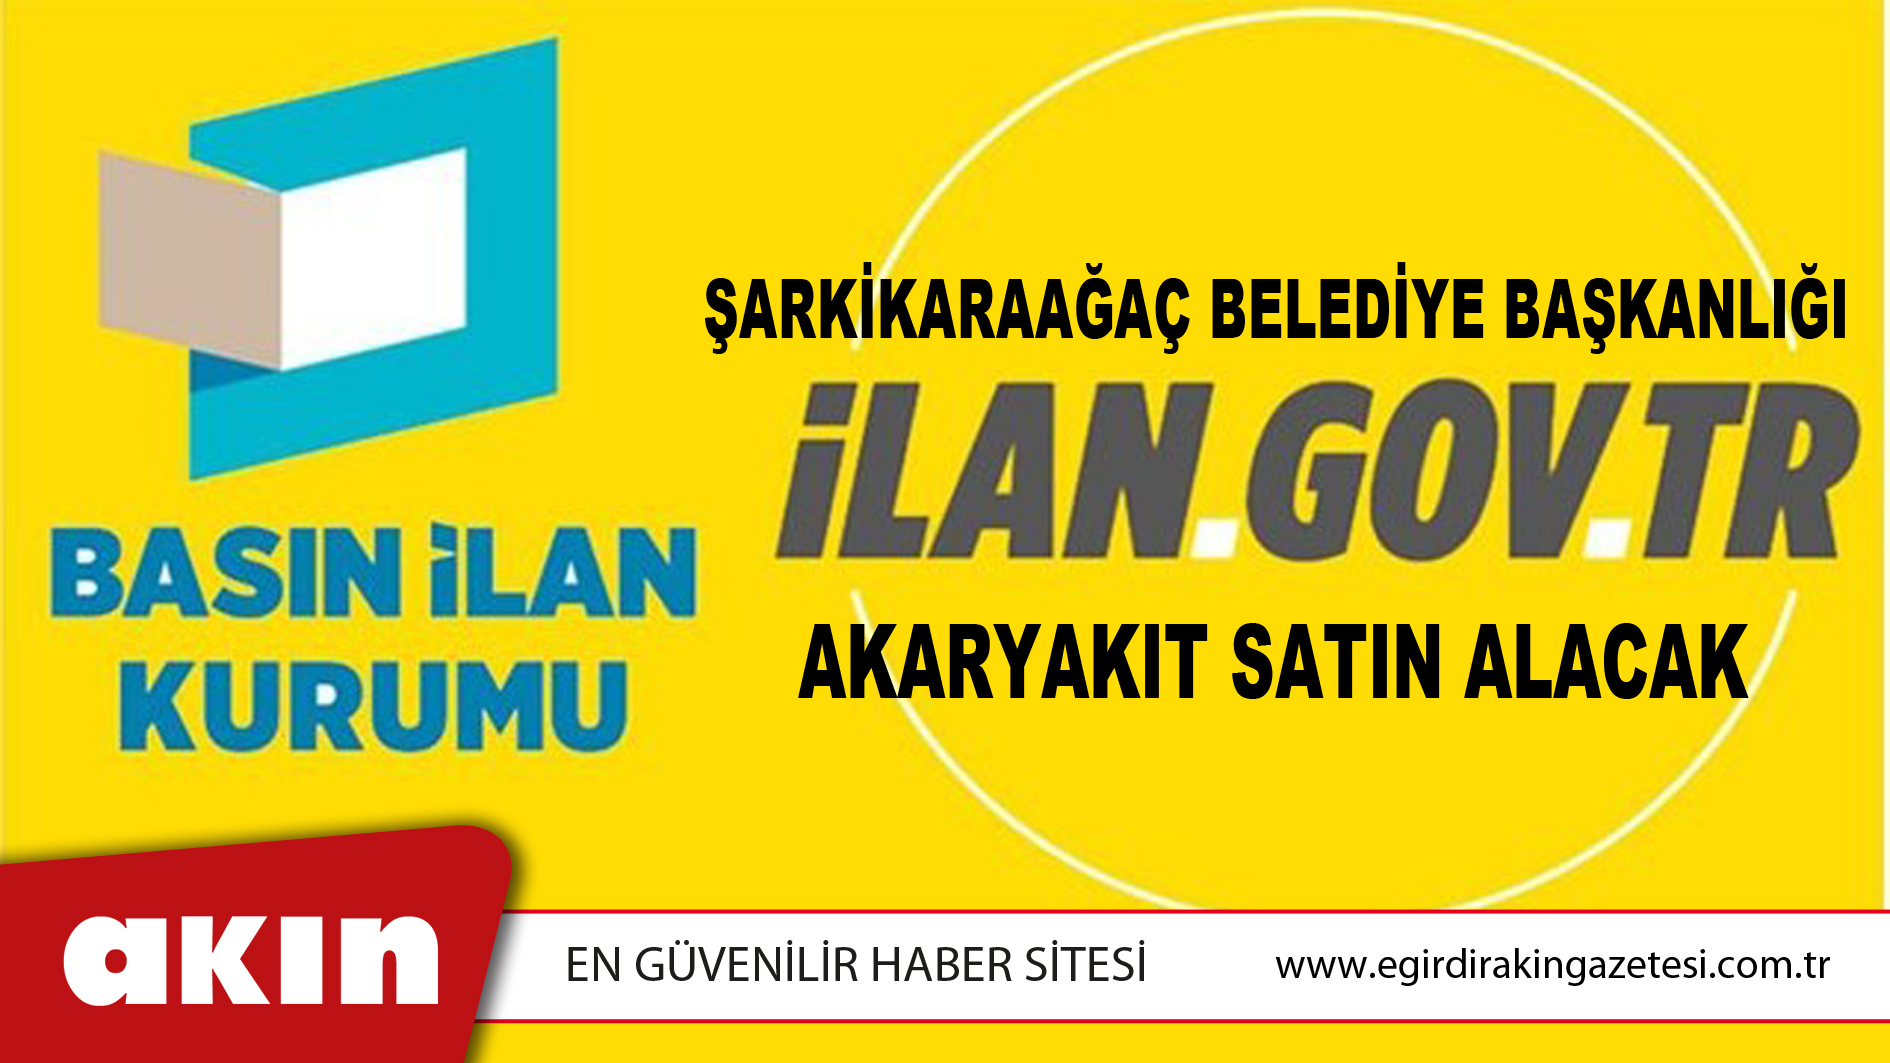 Şarkikaraağaç Belediye Başkanlığı Akaryakıt Satın Alacak